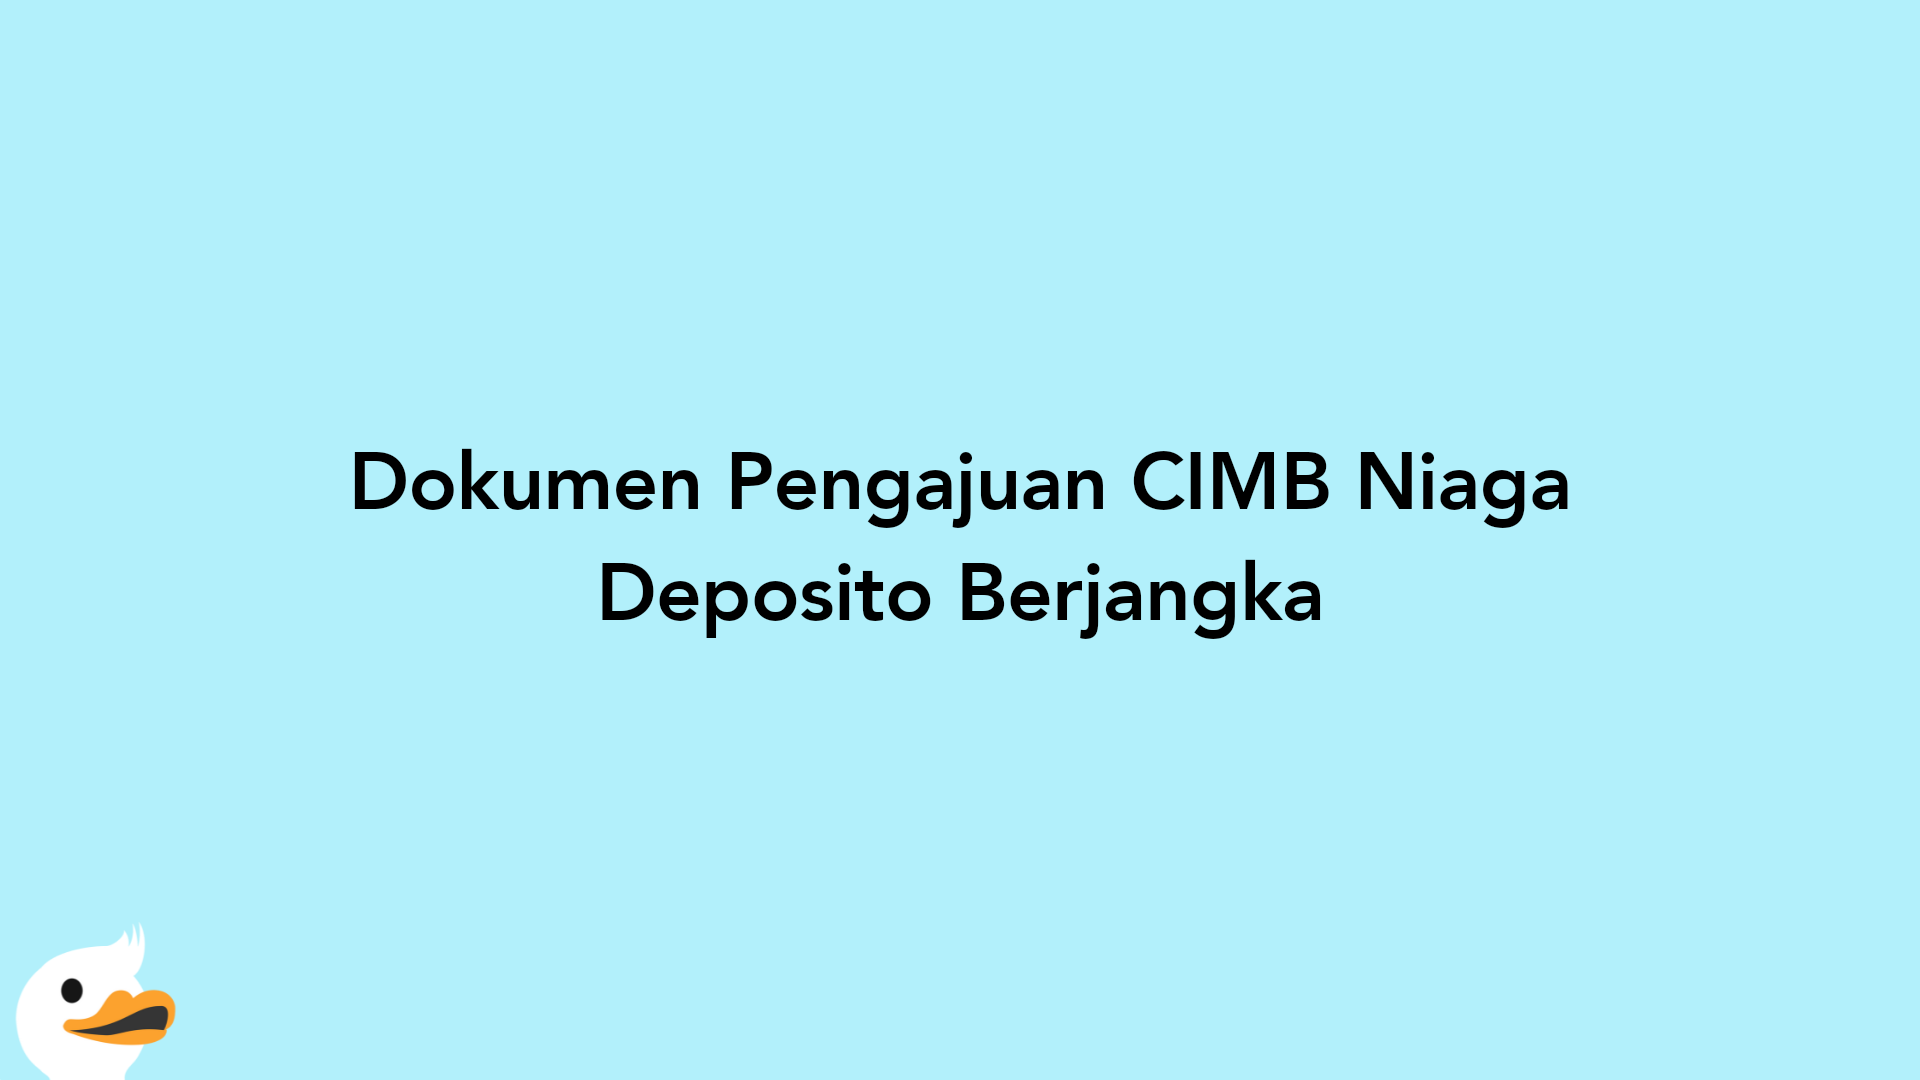 Dokumen Pengajuan CIMB Niaga Deposito Berjangka